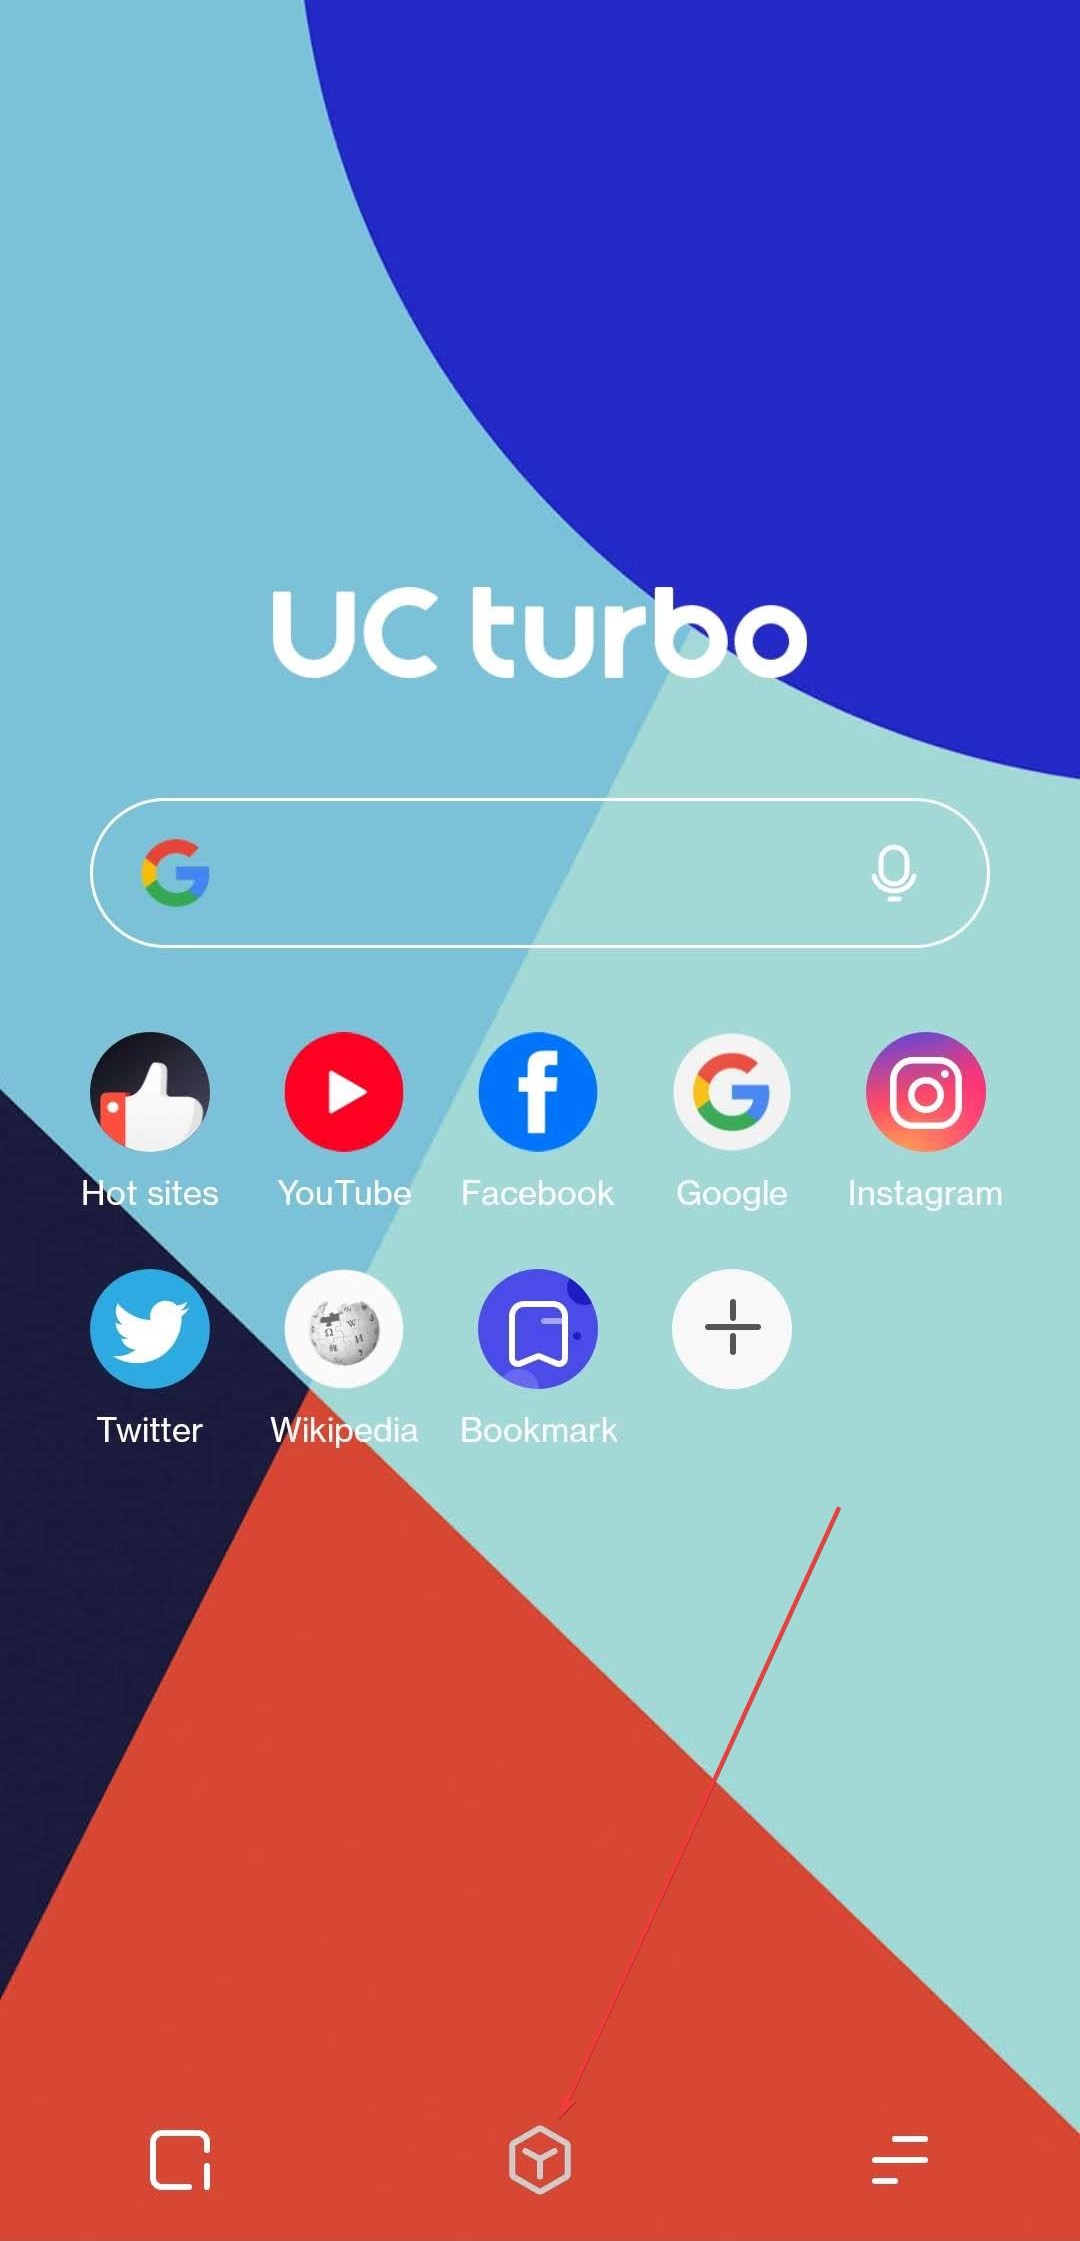 Open UC Browser Tools menu.